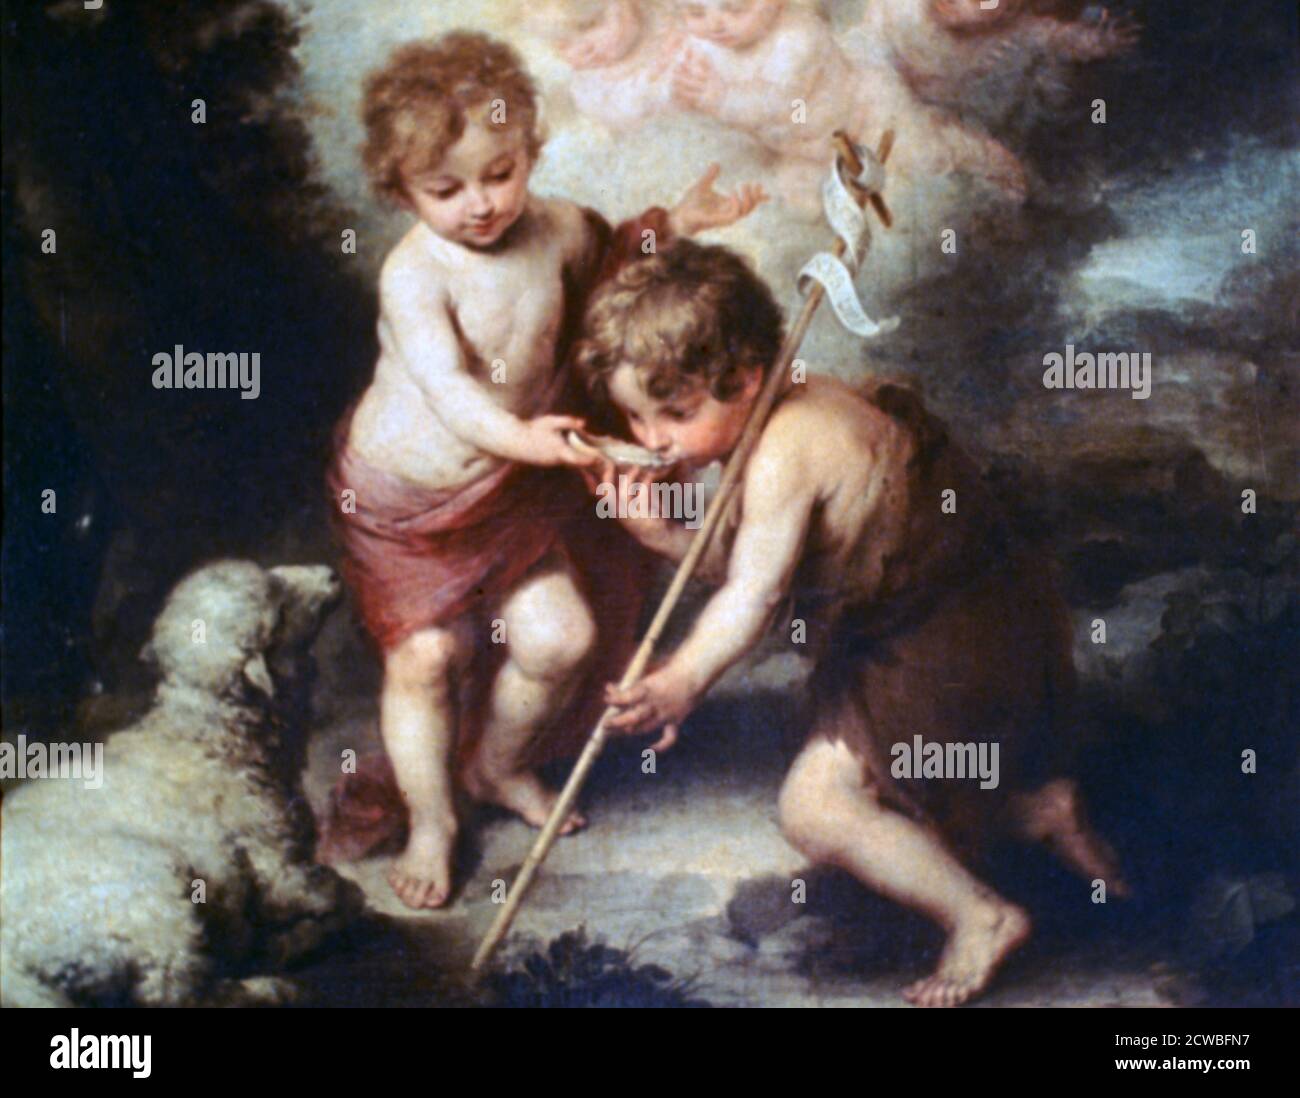 The Boys with the Shell', c1670. Artiste: Bartolome Esteban Murillo. Bartolome Esteban Murillo(1617-1682) était un peintre baroque espagnol, plus connu pour ses œuvres religieuses. Banque D'Images